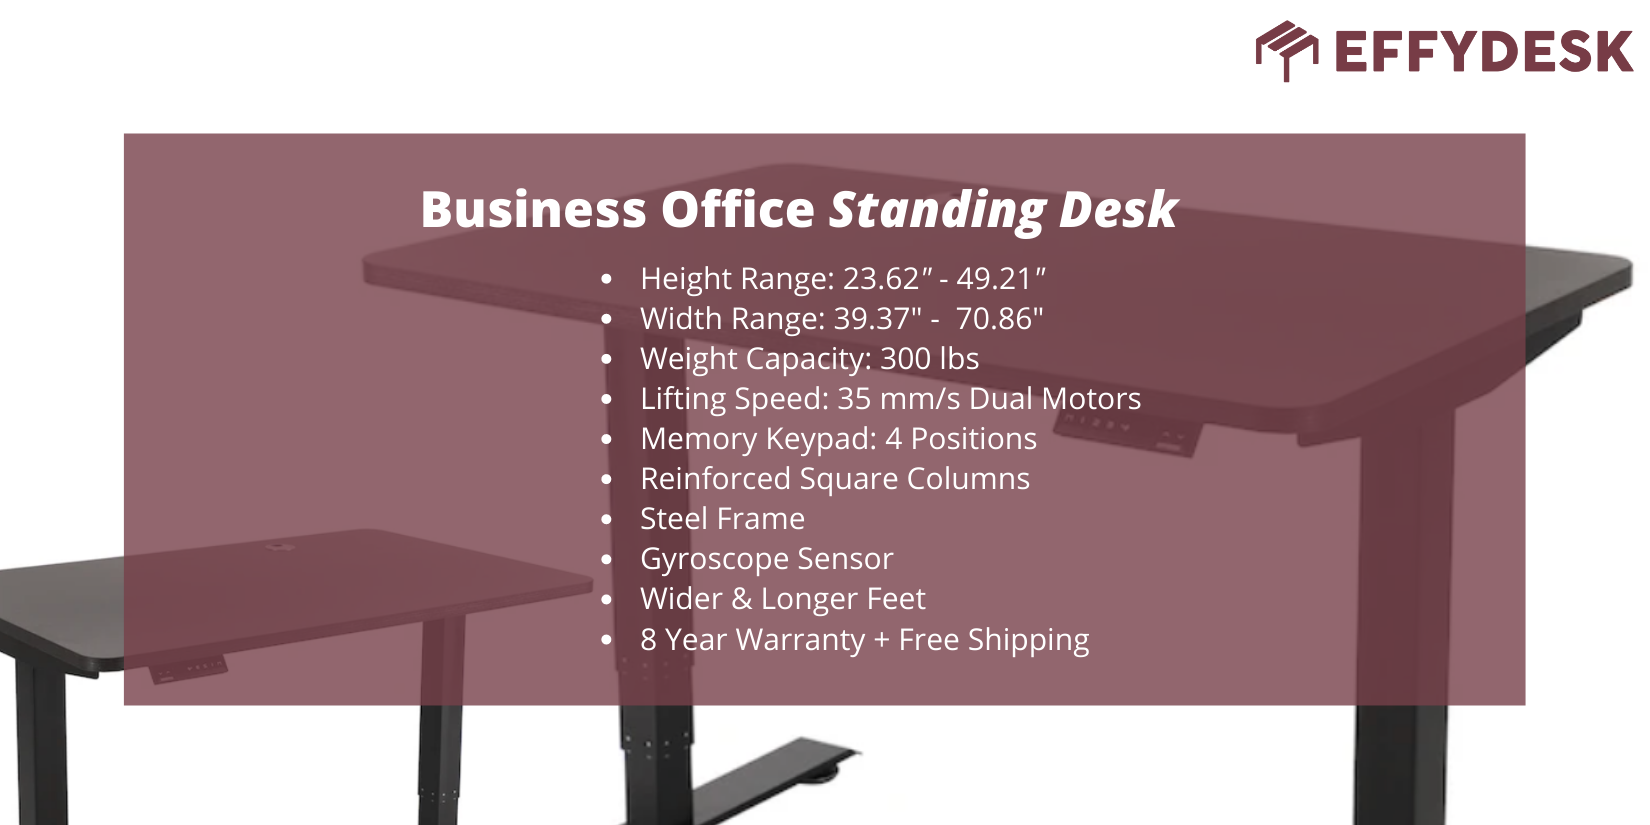 EFFYDESK business office desk specs